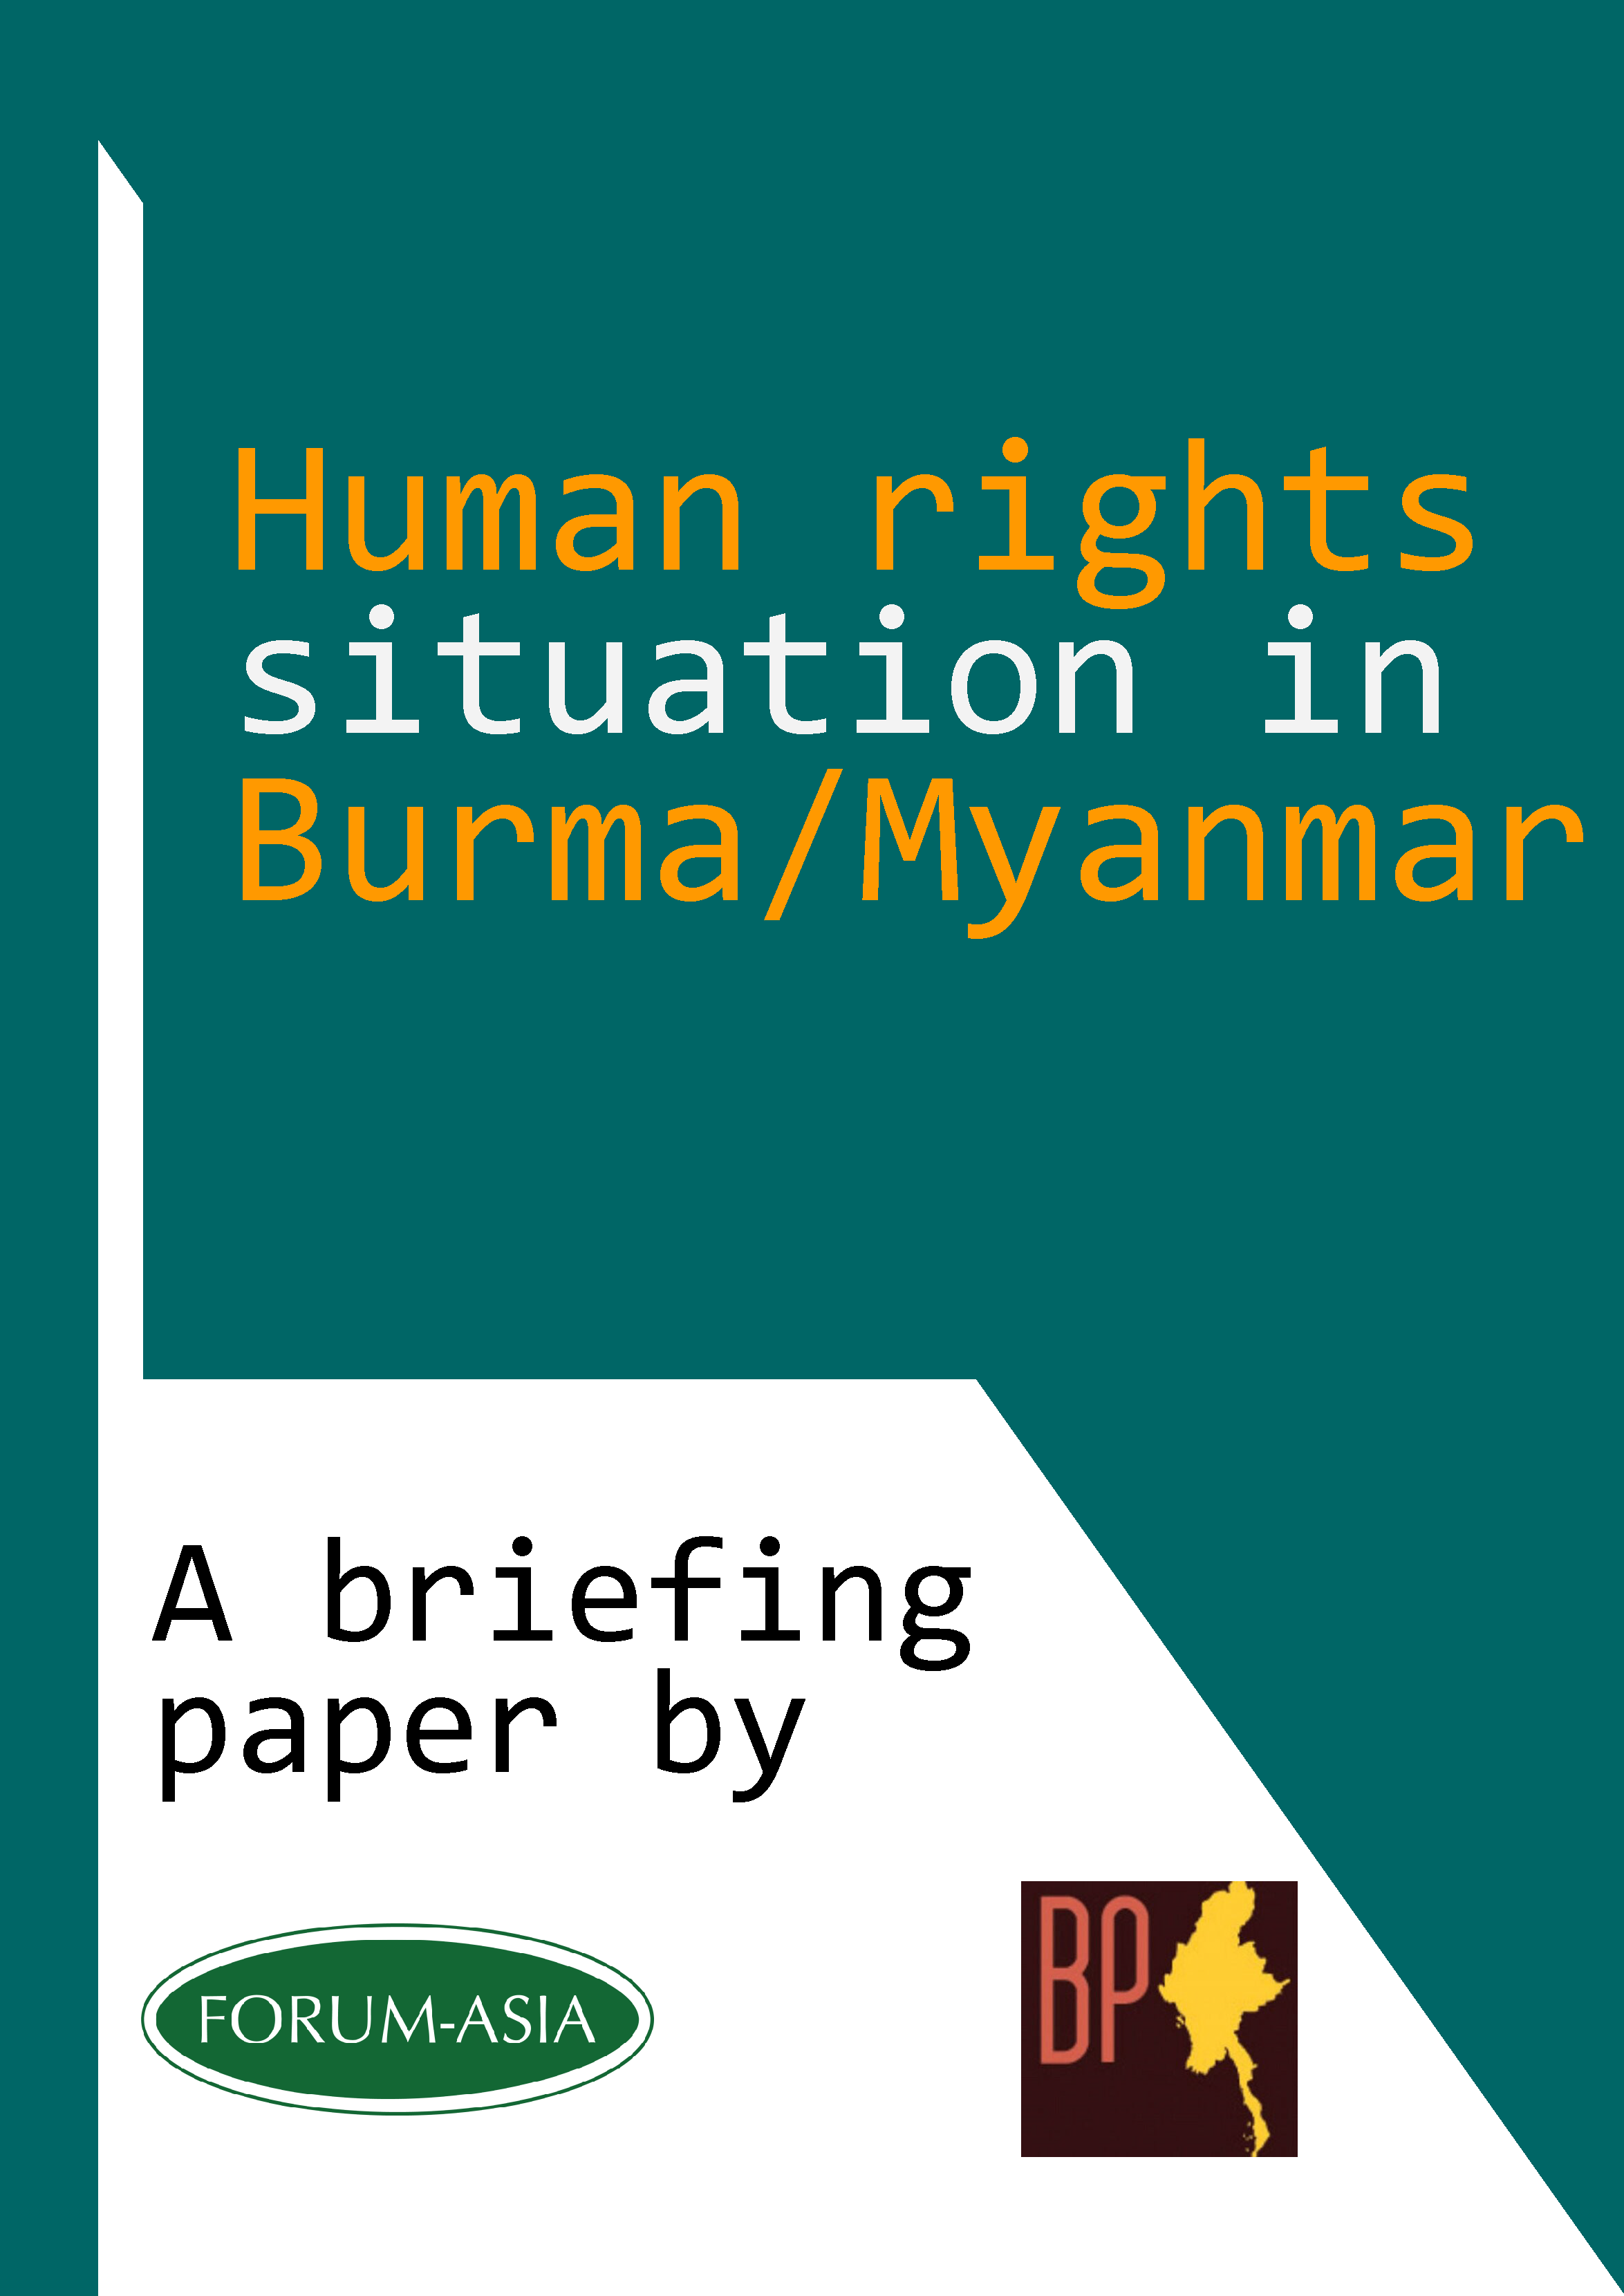 Briefing Paper UNA Burma HRC31 (Cover)